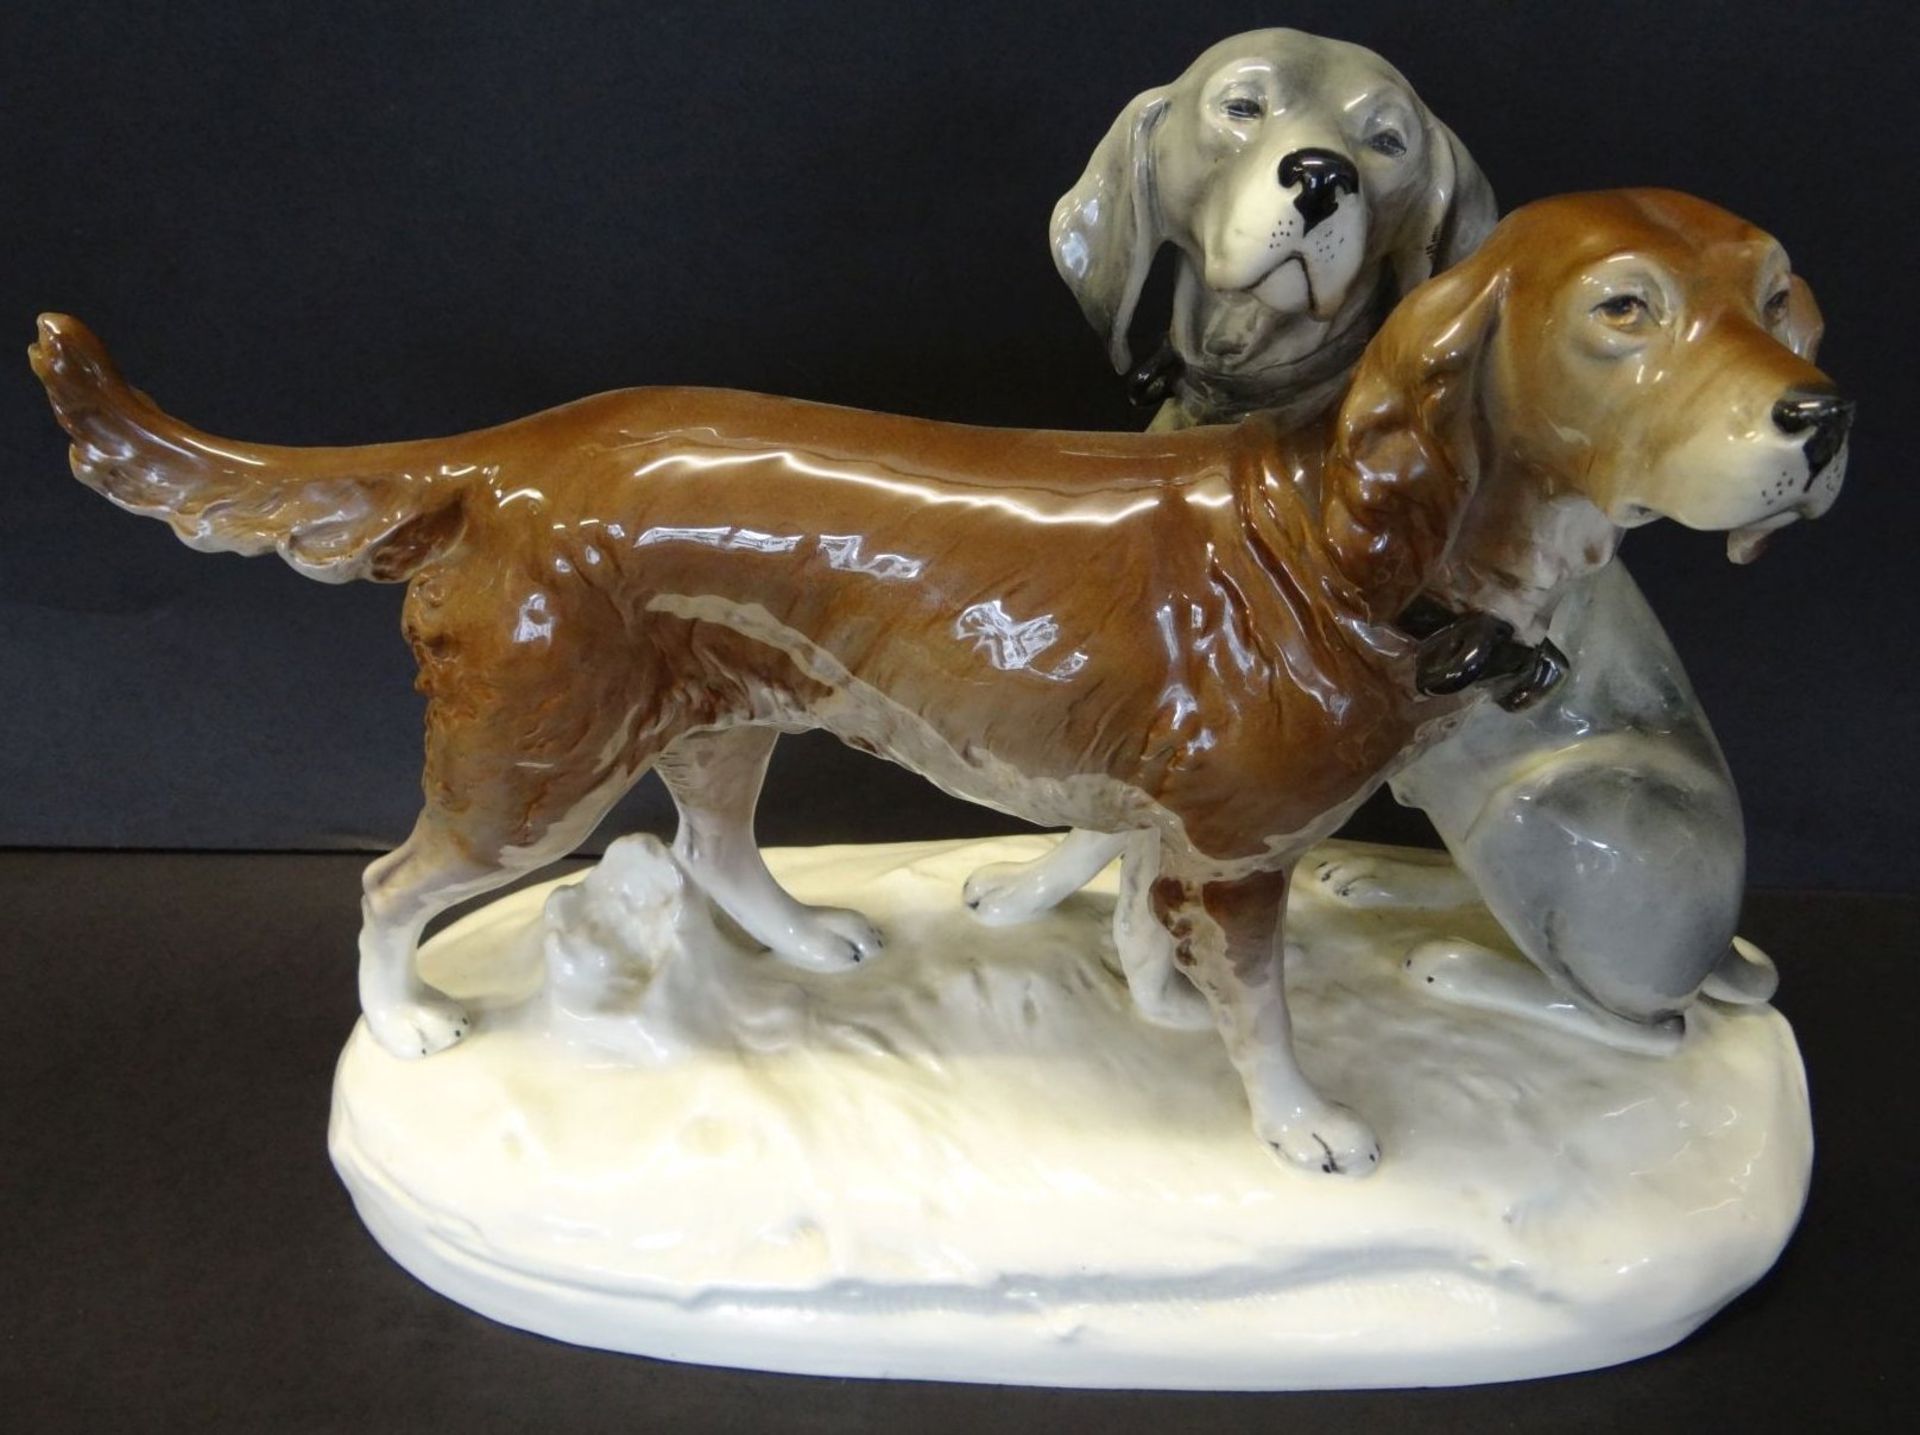 grosses Hundepaar "Royal Dux" bemalt, H-30 cm, L-43 cm, kl. Abplatzer am Sockel - Bild 2 aus 8